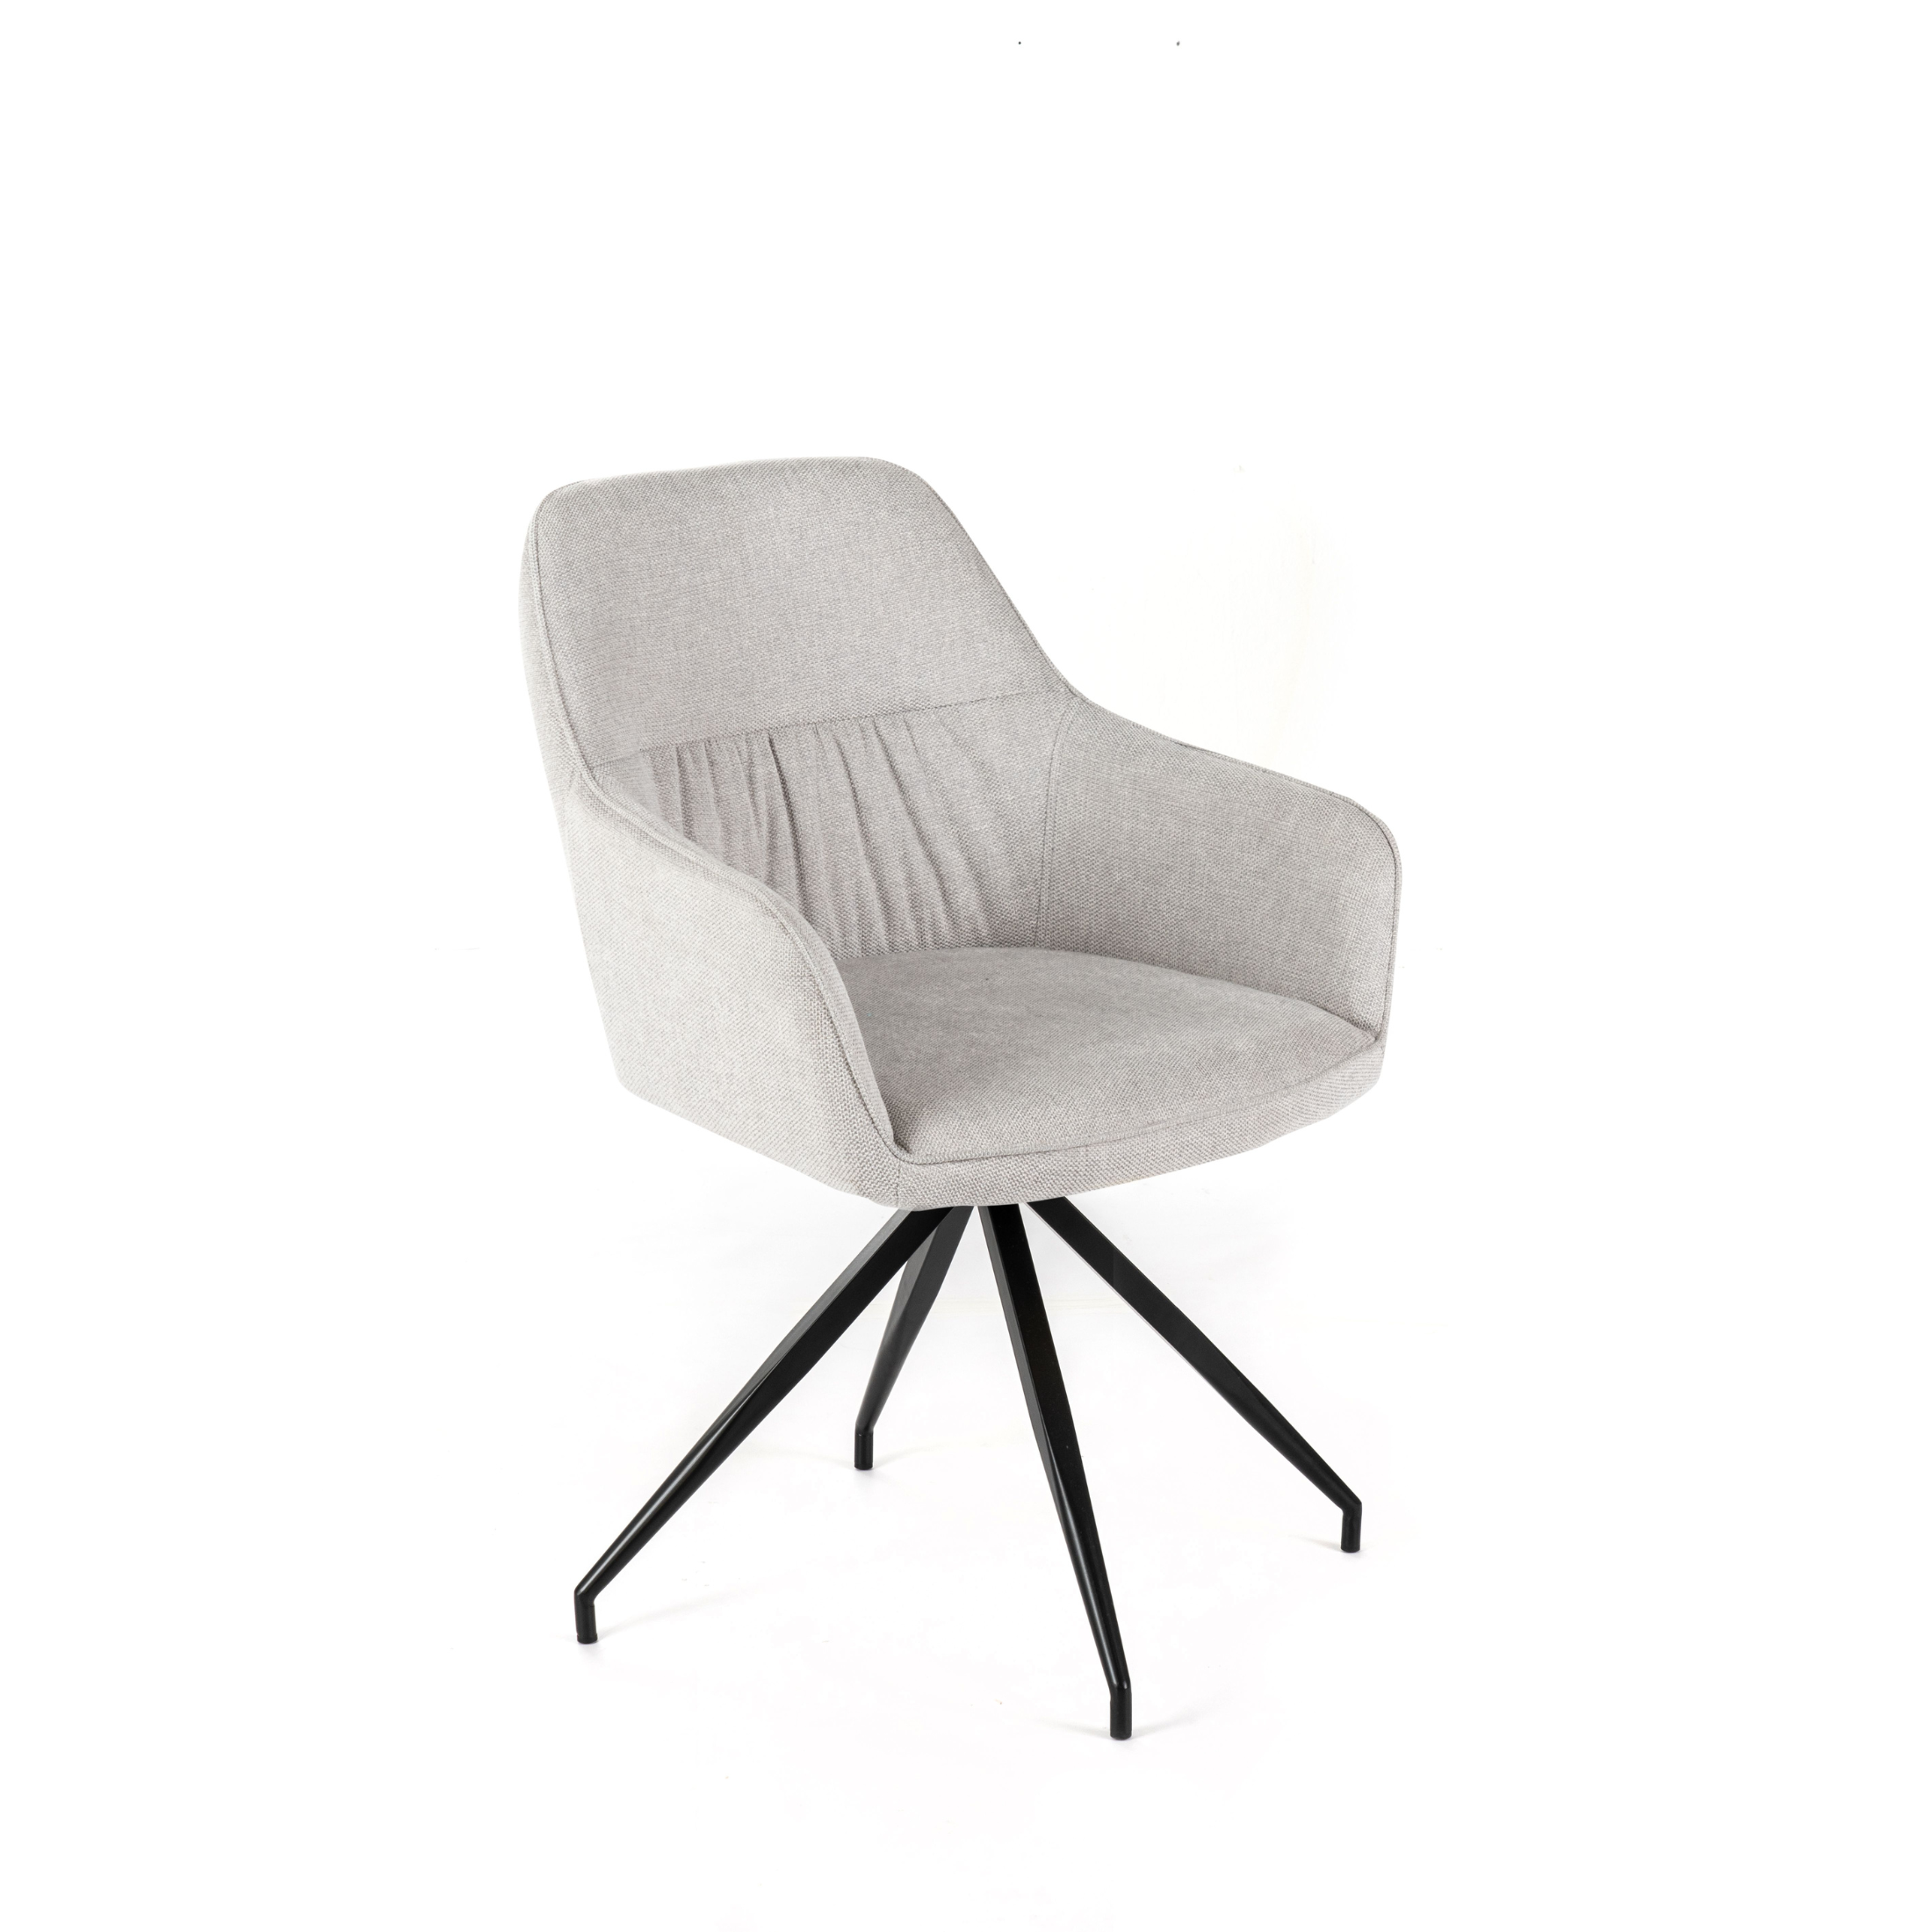 Silla acolchada "Gaia" sillón moderno en tela 56x56 cm 87h